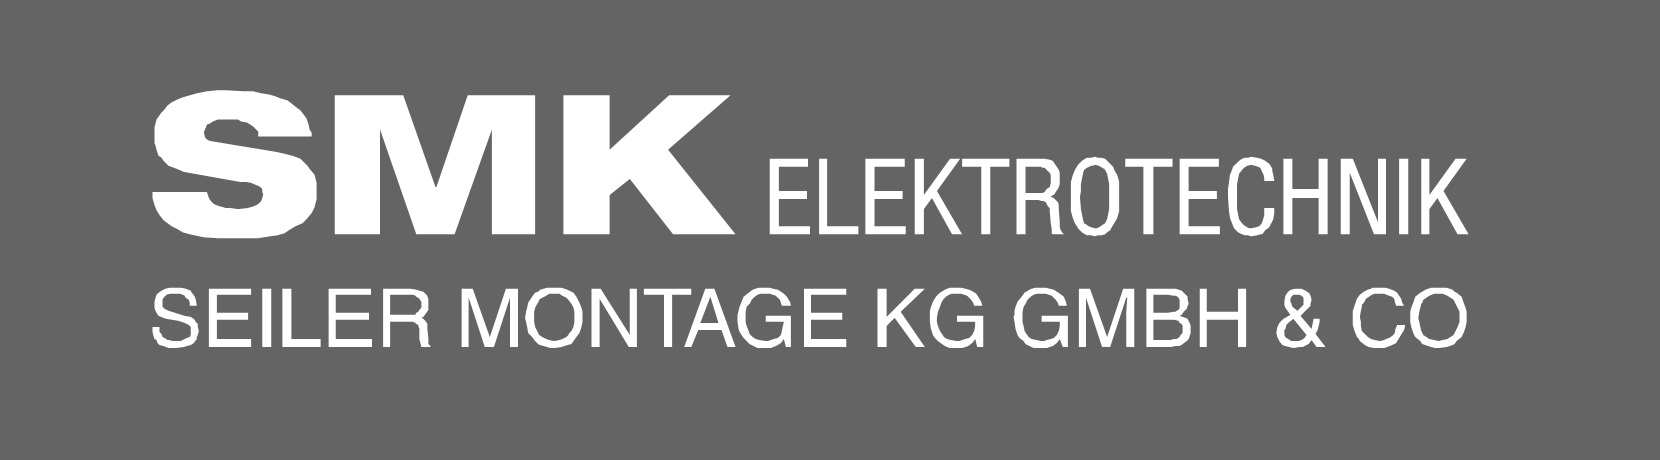 Seiler Montage KG GmbH & Co.